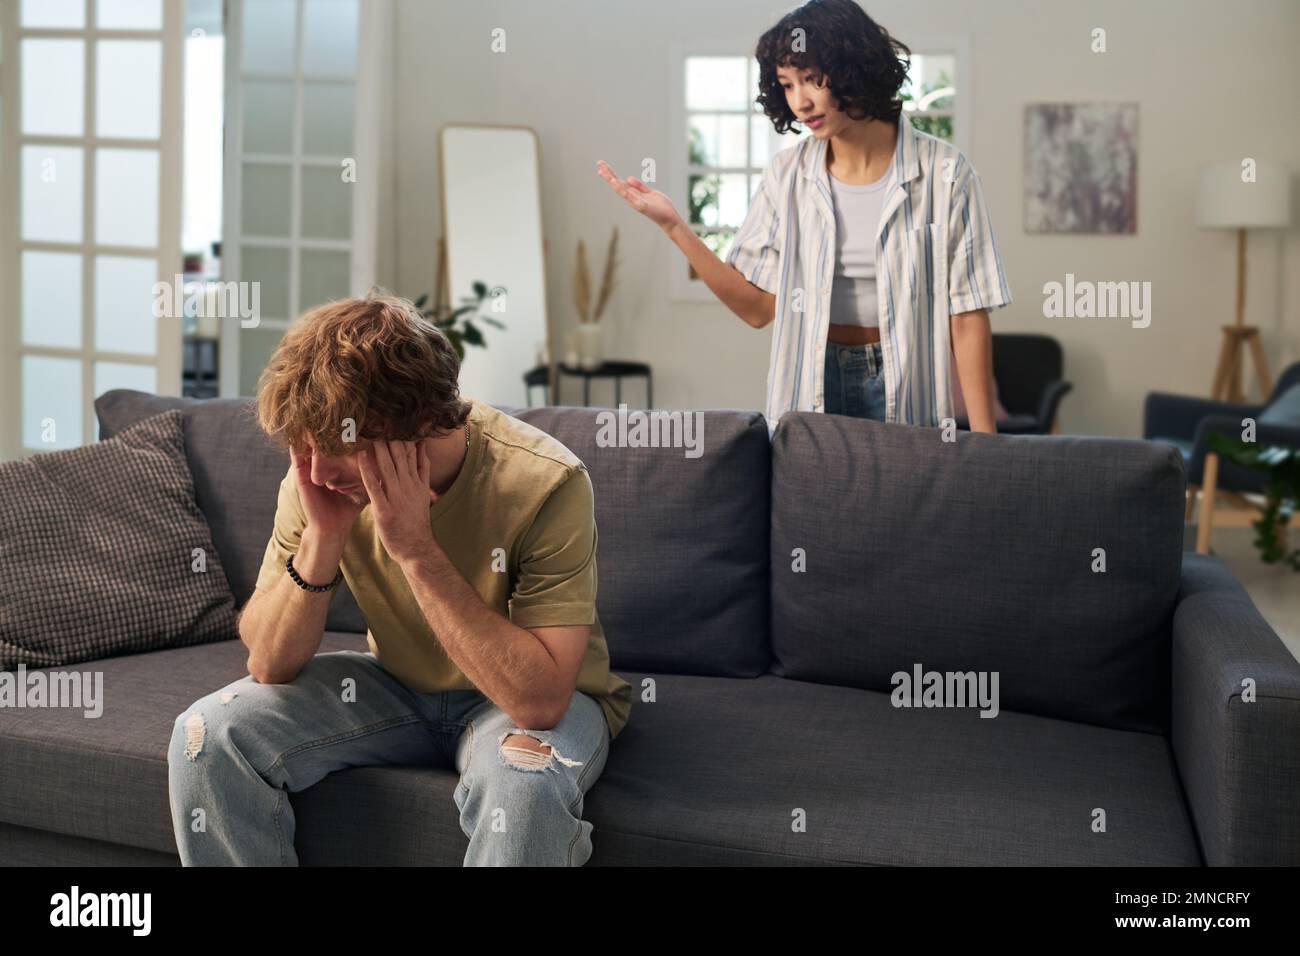 Ein junger verärgerter Mann sitzt auf dem Sofa und berührt seinen Kopf, während seine verärgerte Frau hinter ihm steht und ihn während des Streits schimpft Stockfoto